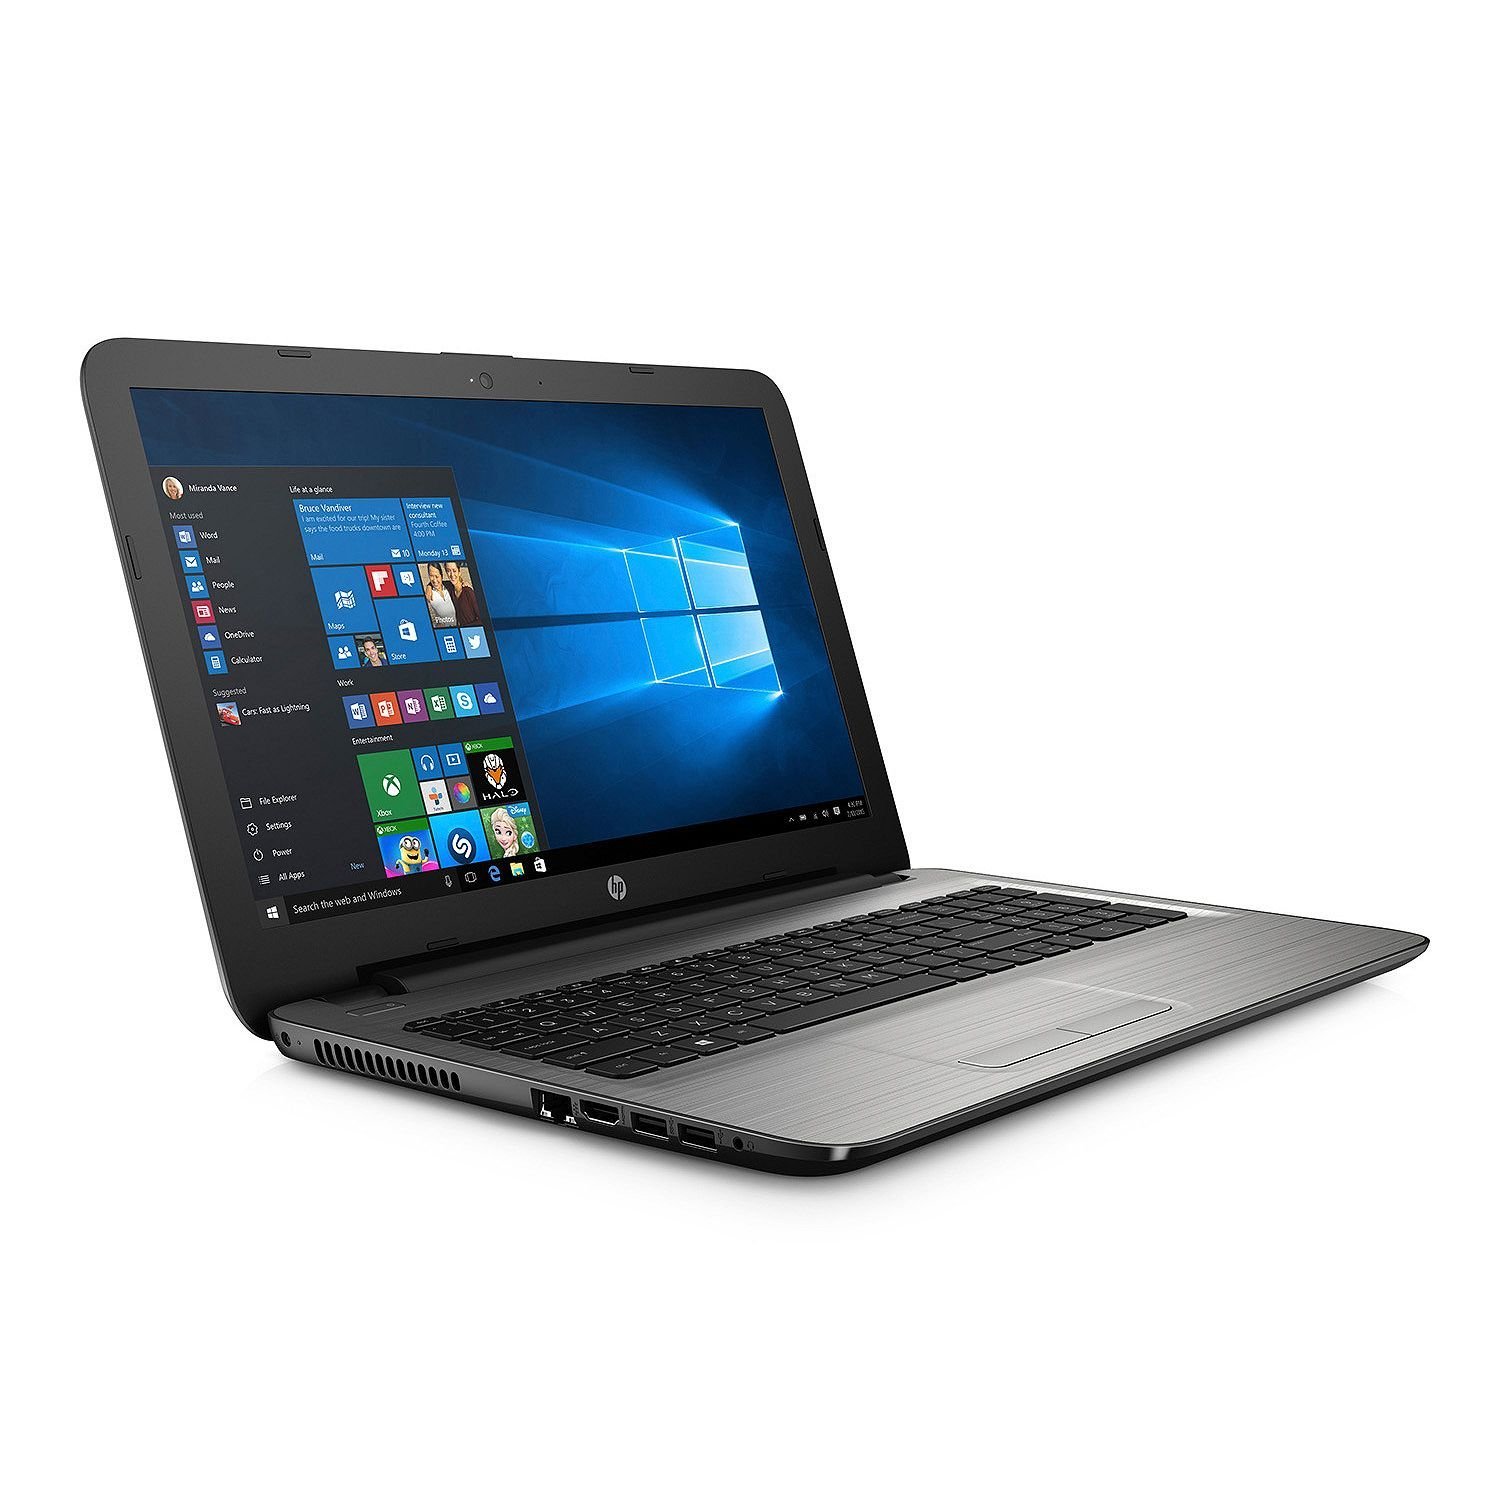 2017  HP Notebook 15 High Performance Premium HD Laptop 7th Intel Core i7-7500u Processor 2.7 GHz  16GB DDR4 RAM  1TB HDD  DVD±RW  802.11acWiFi  Bluetooth  HDMI Windows 10-silver